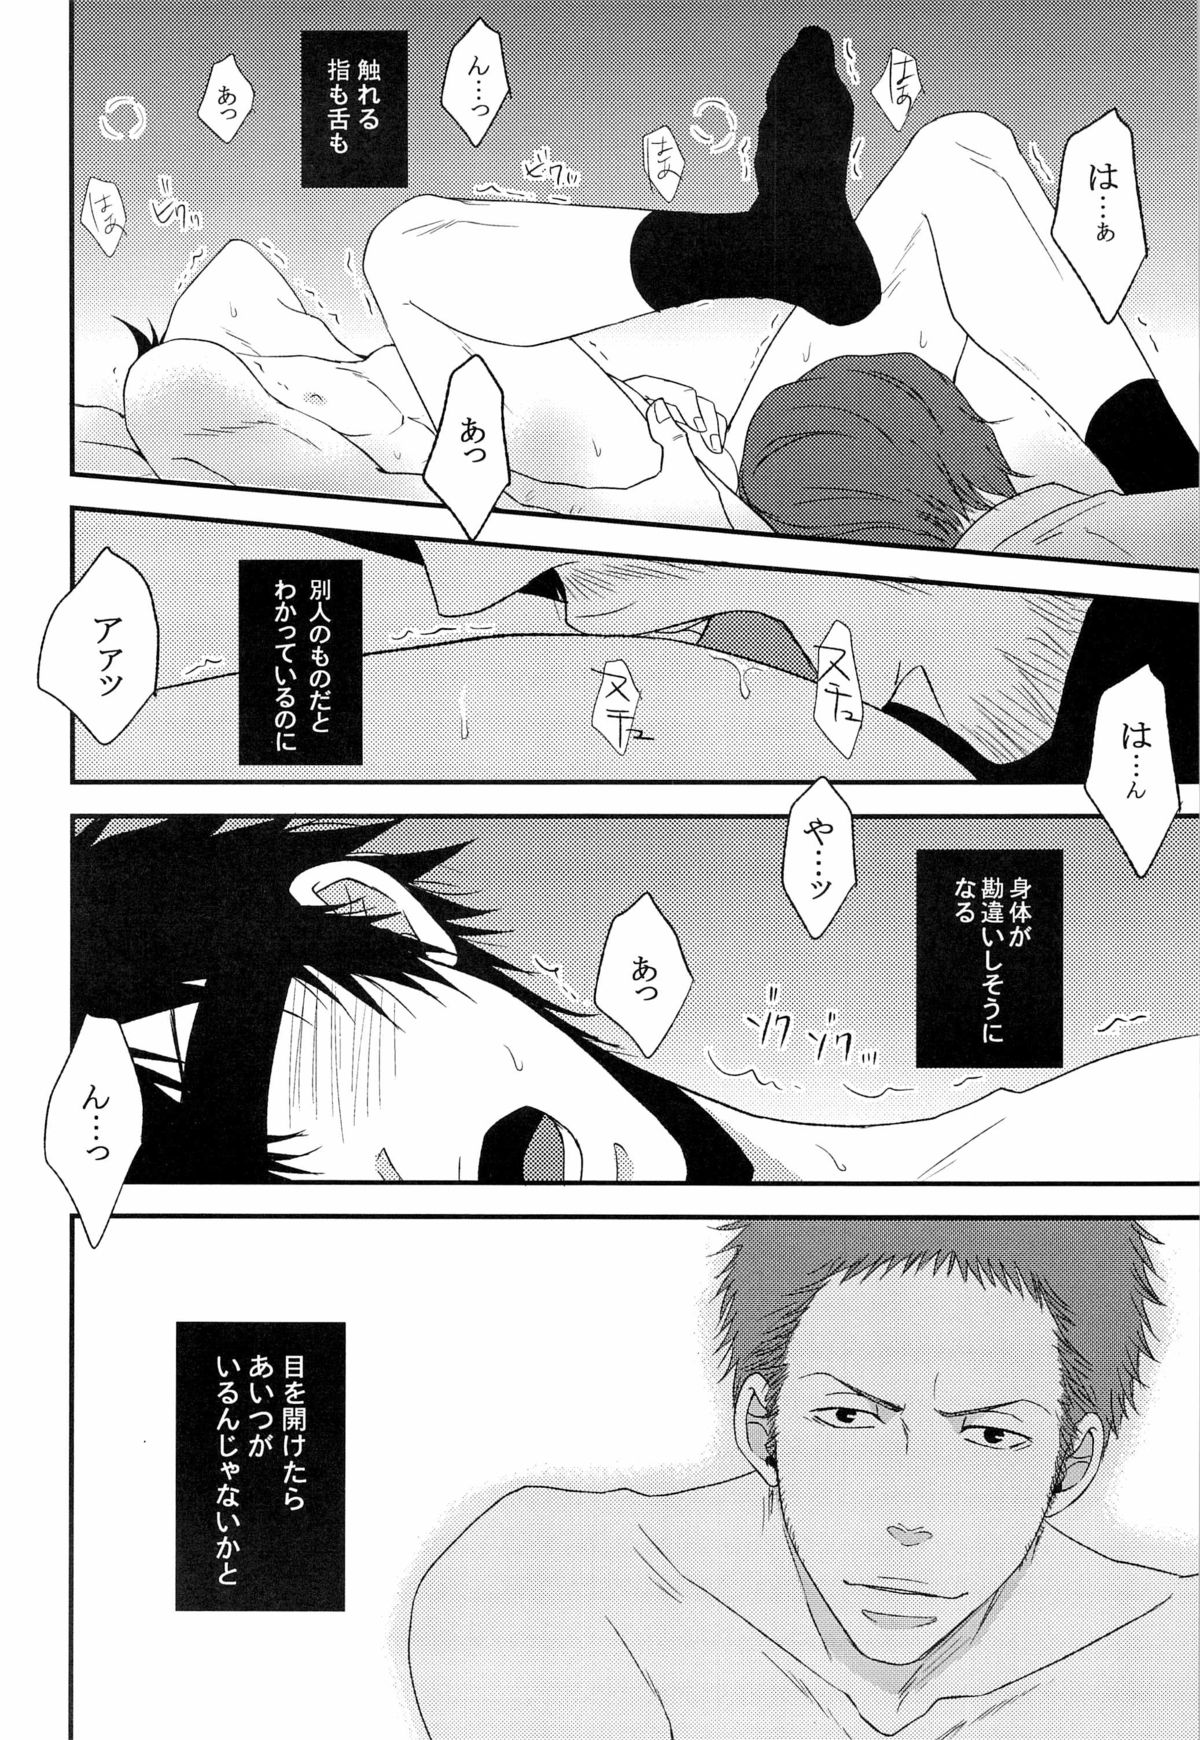 [FINDER, miou miou (Mukai Yuuya, Nana)] Master Hazard (Psycho-Pass) page 30 full